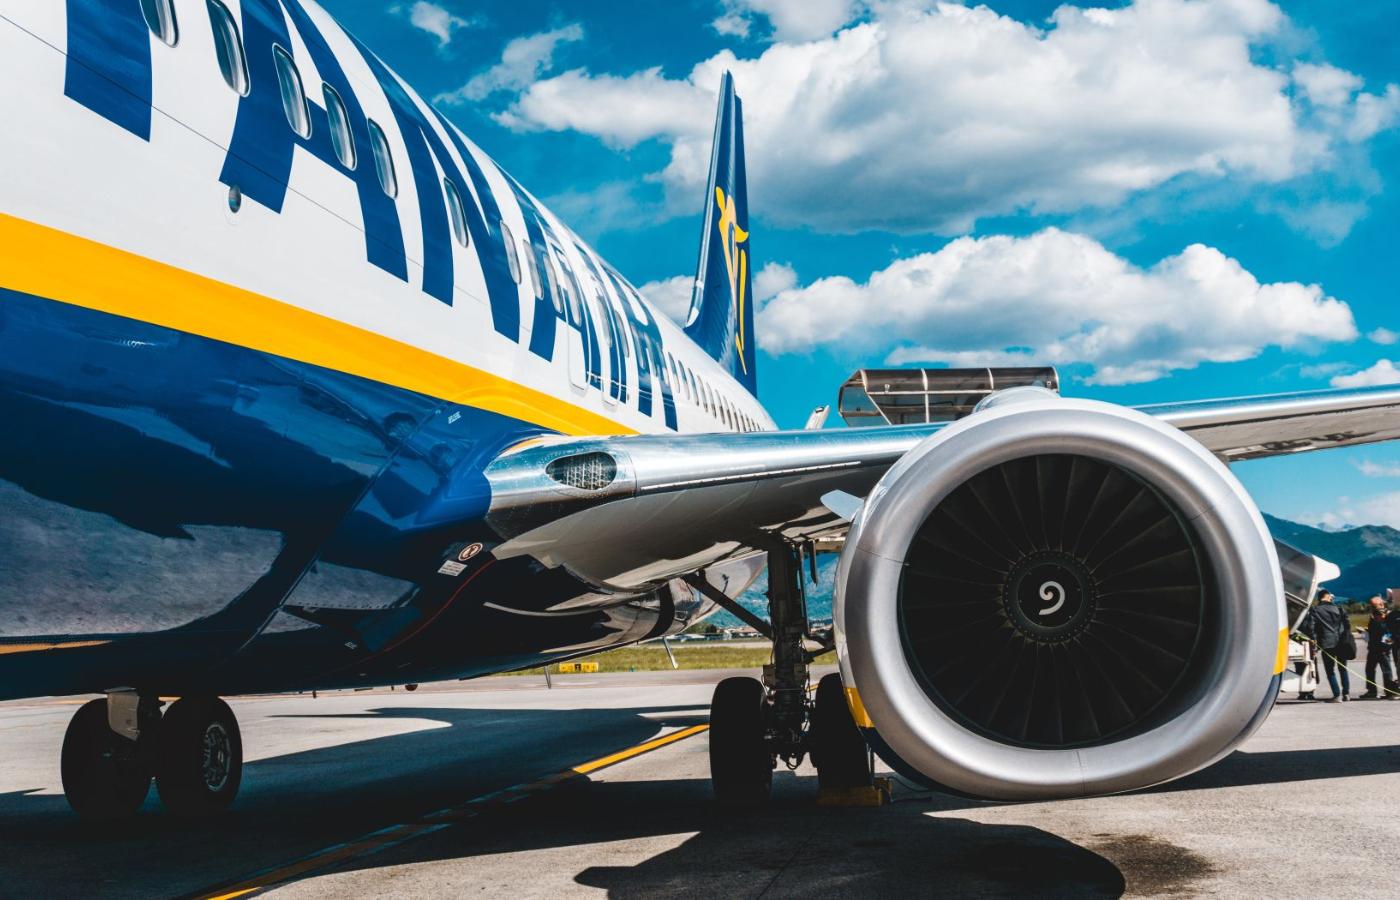 Samolot tanich linii Ryanair na płycie lotniska